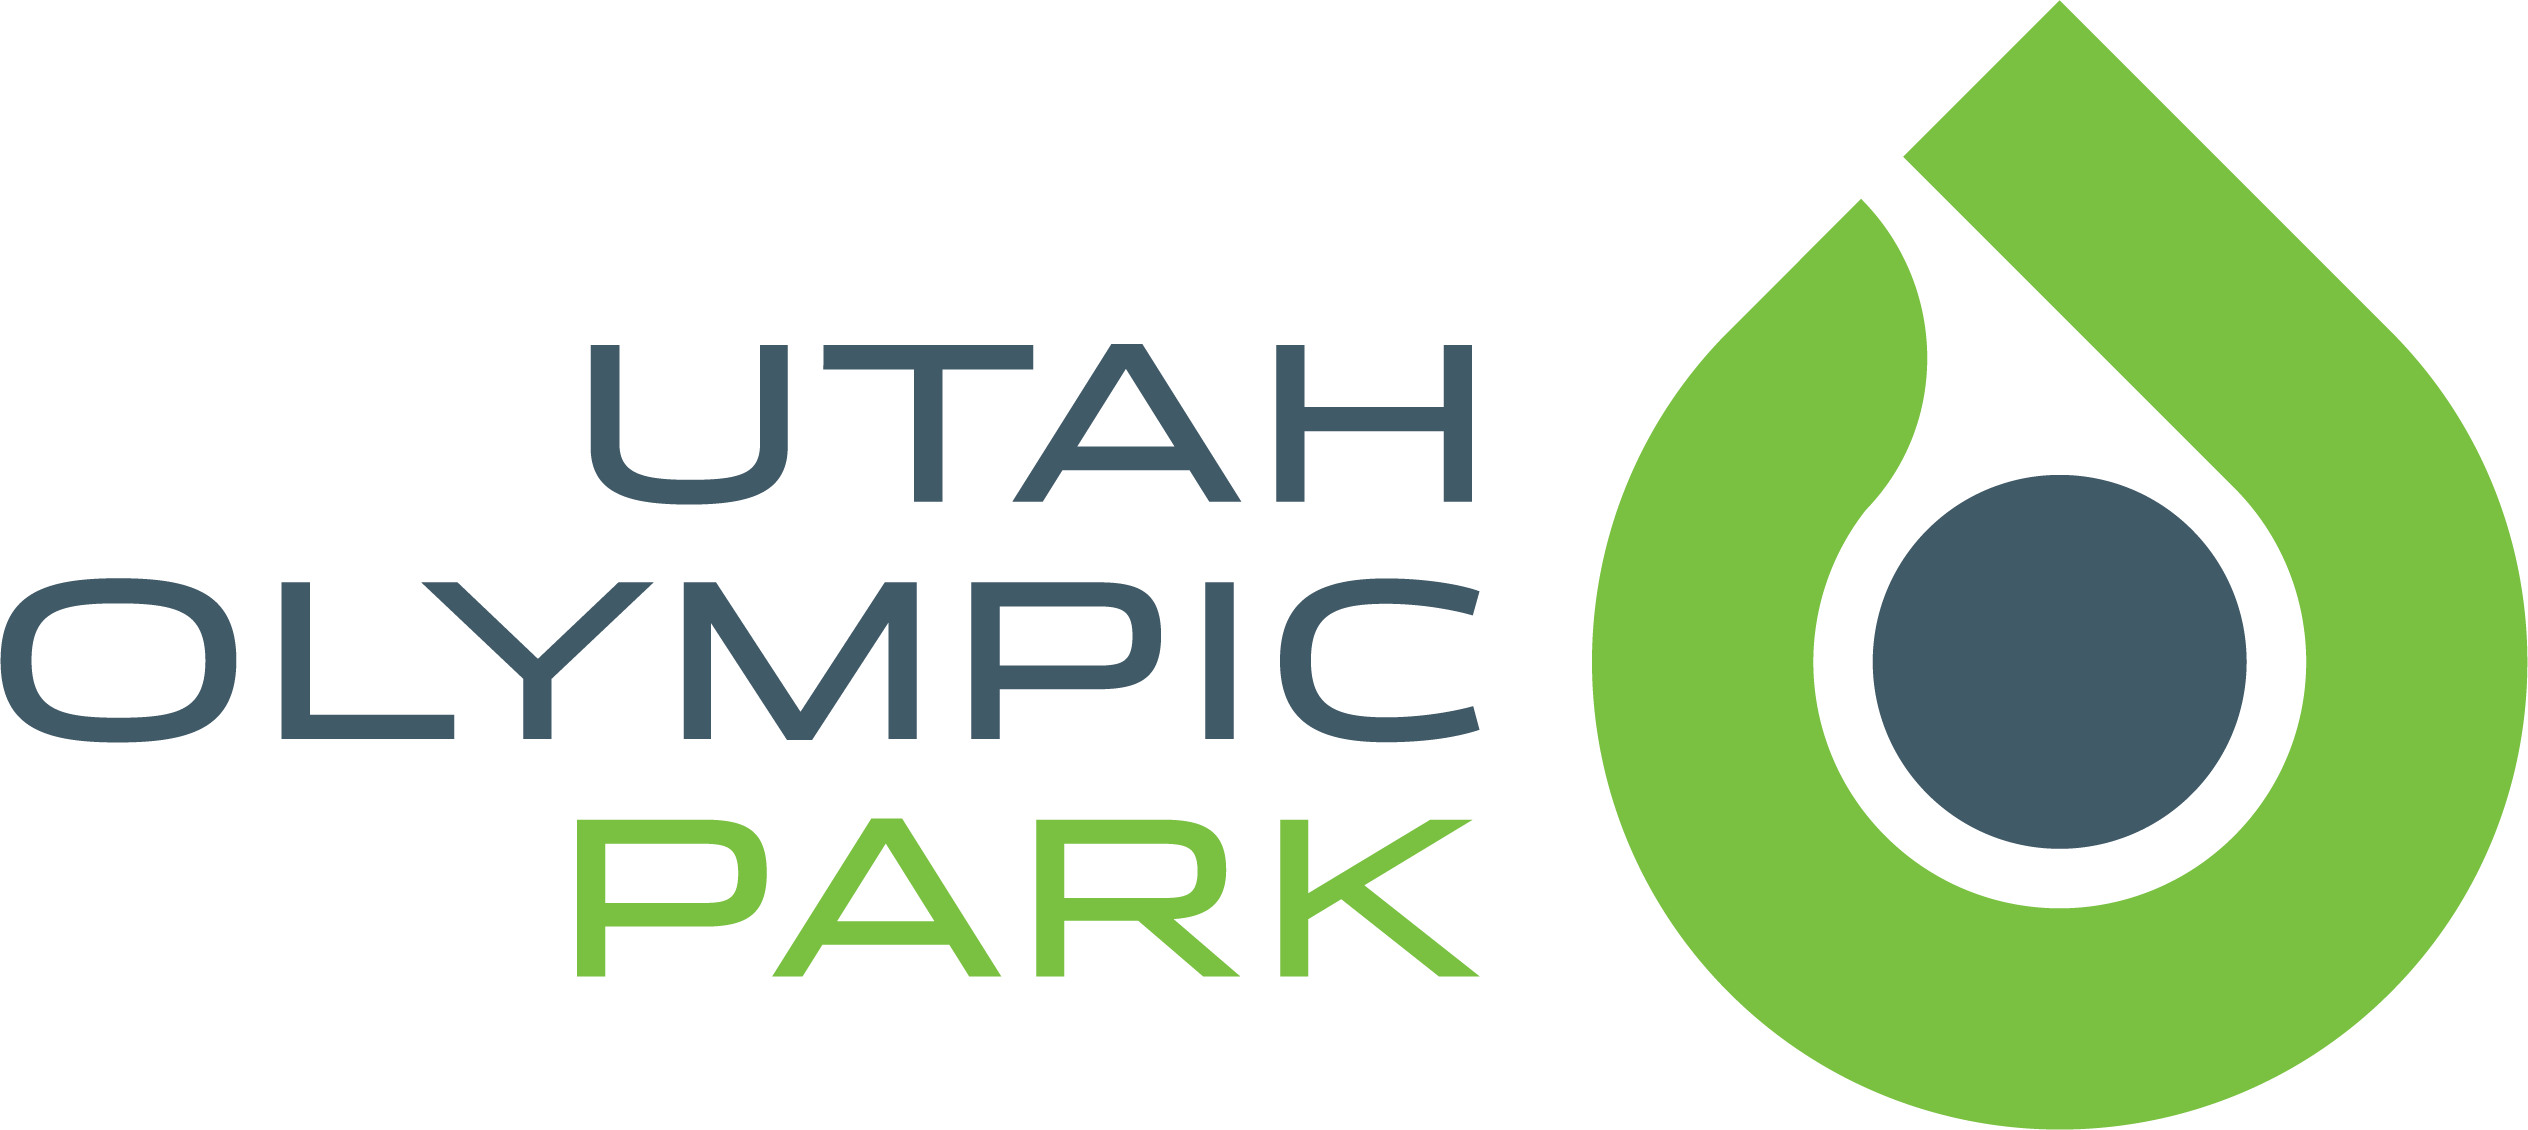 Utah Olympic Park logo